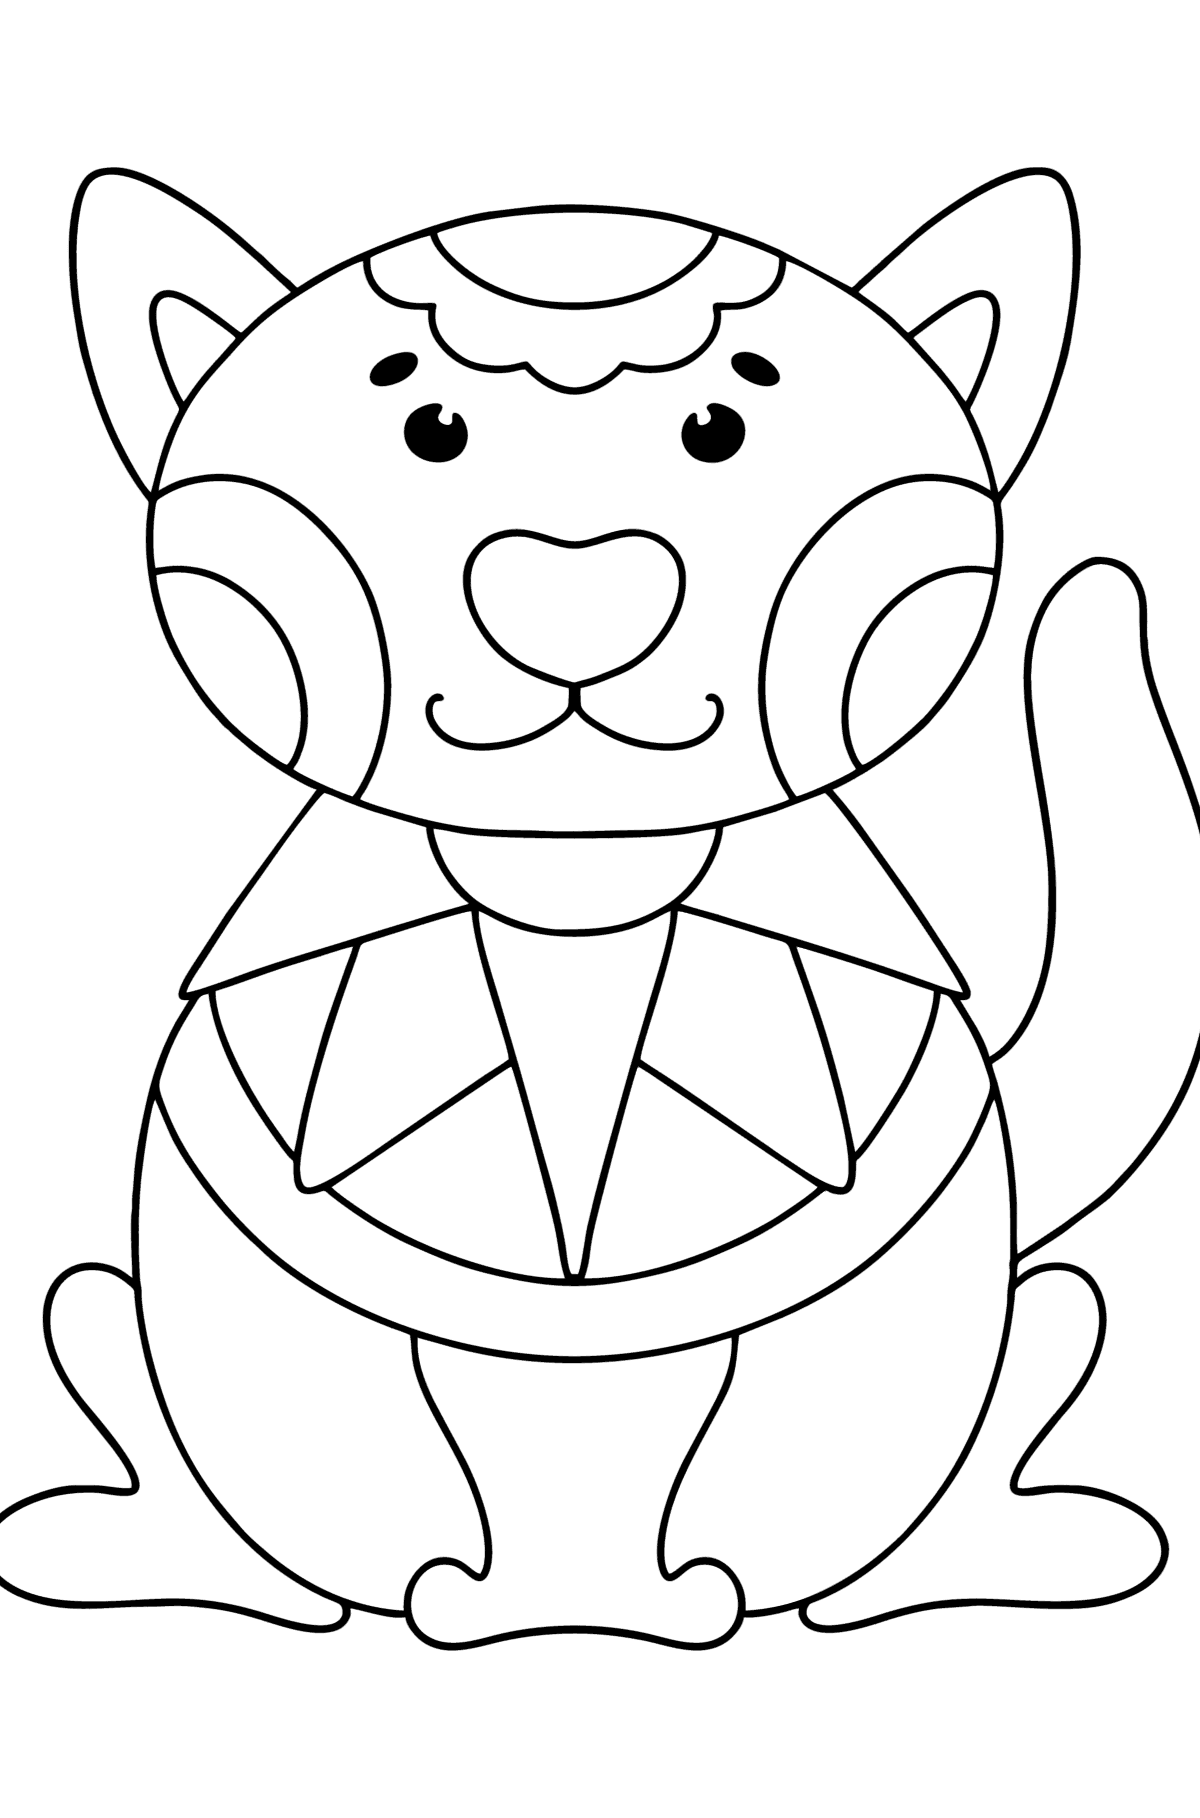 Anti stres kedisi boyama sayfası - Boyamalar çocuklar için